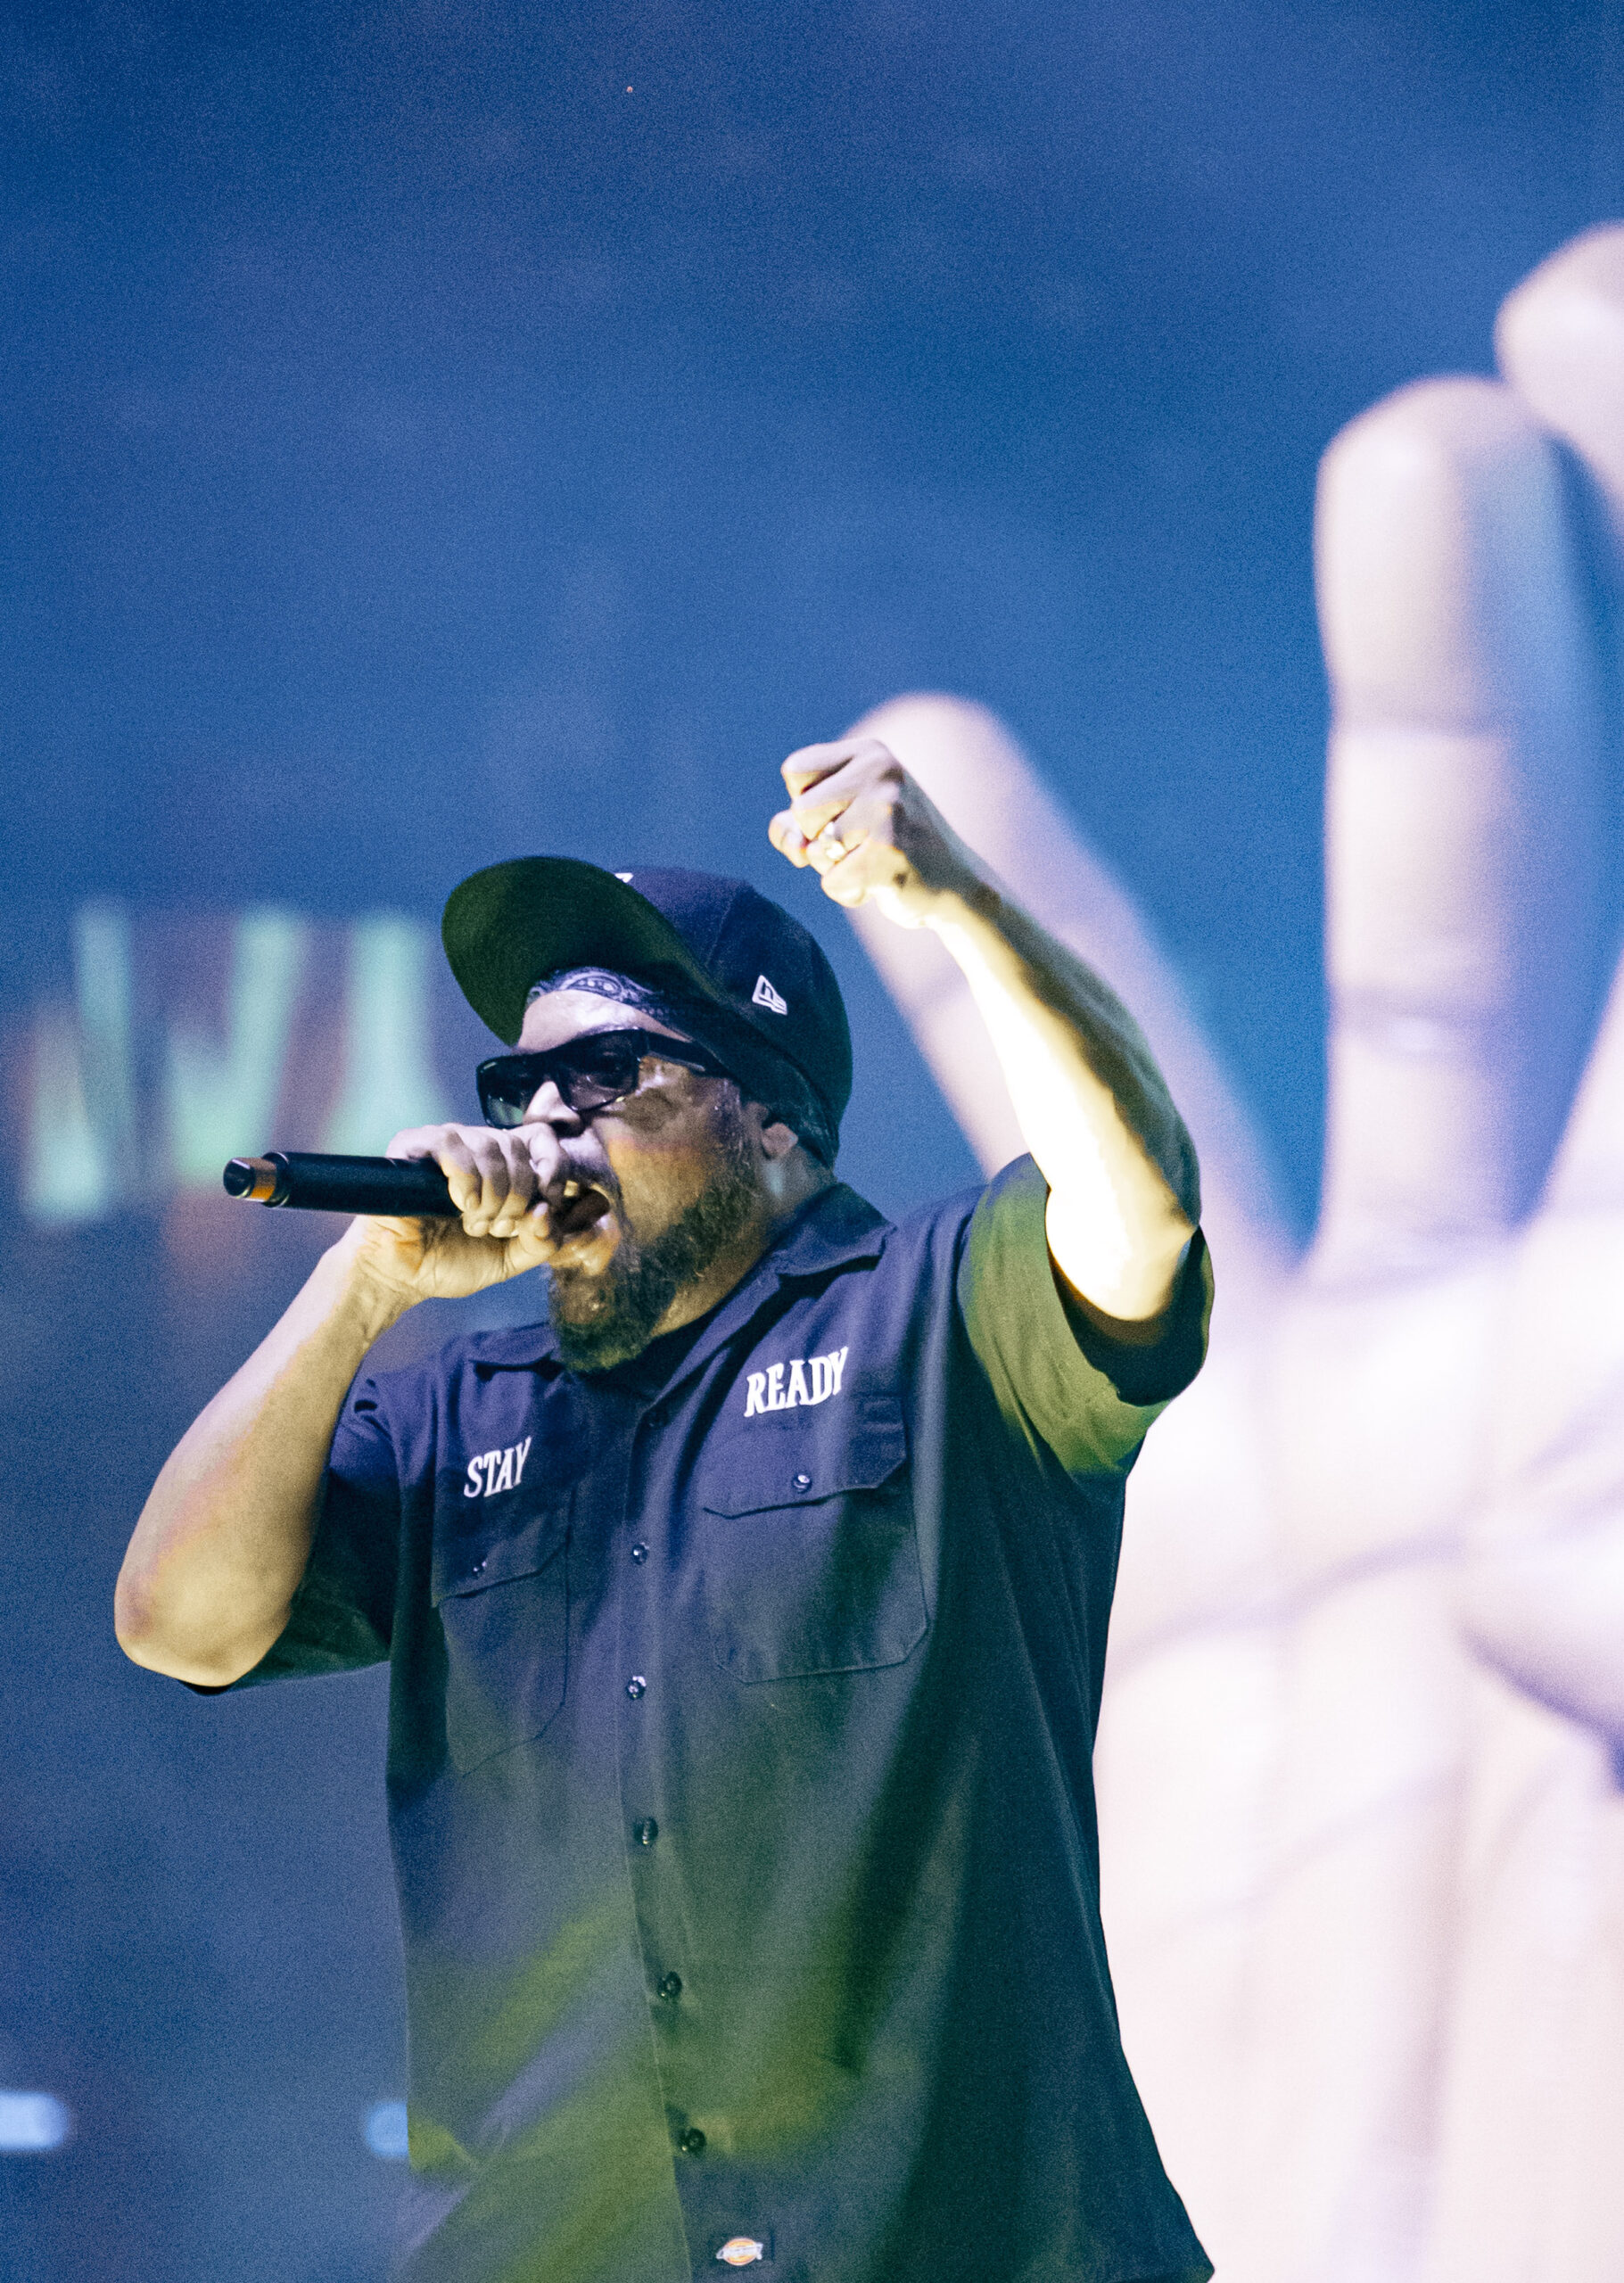 Ice Cube live in Truro, Nova Scotia